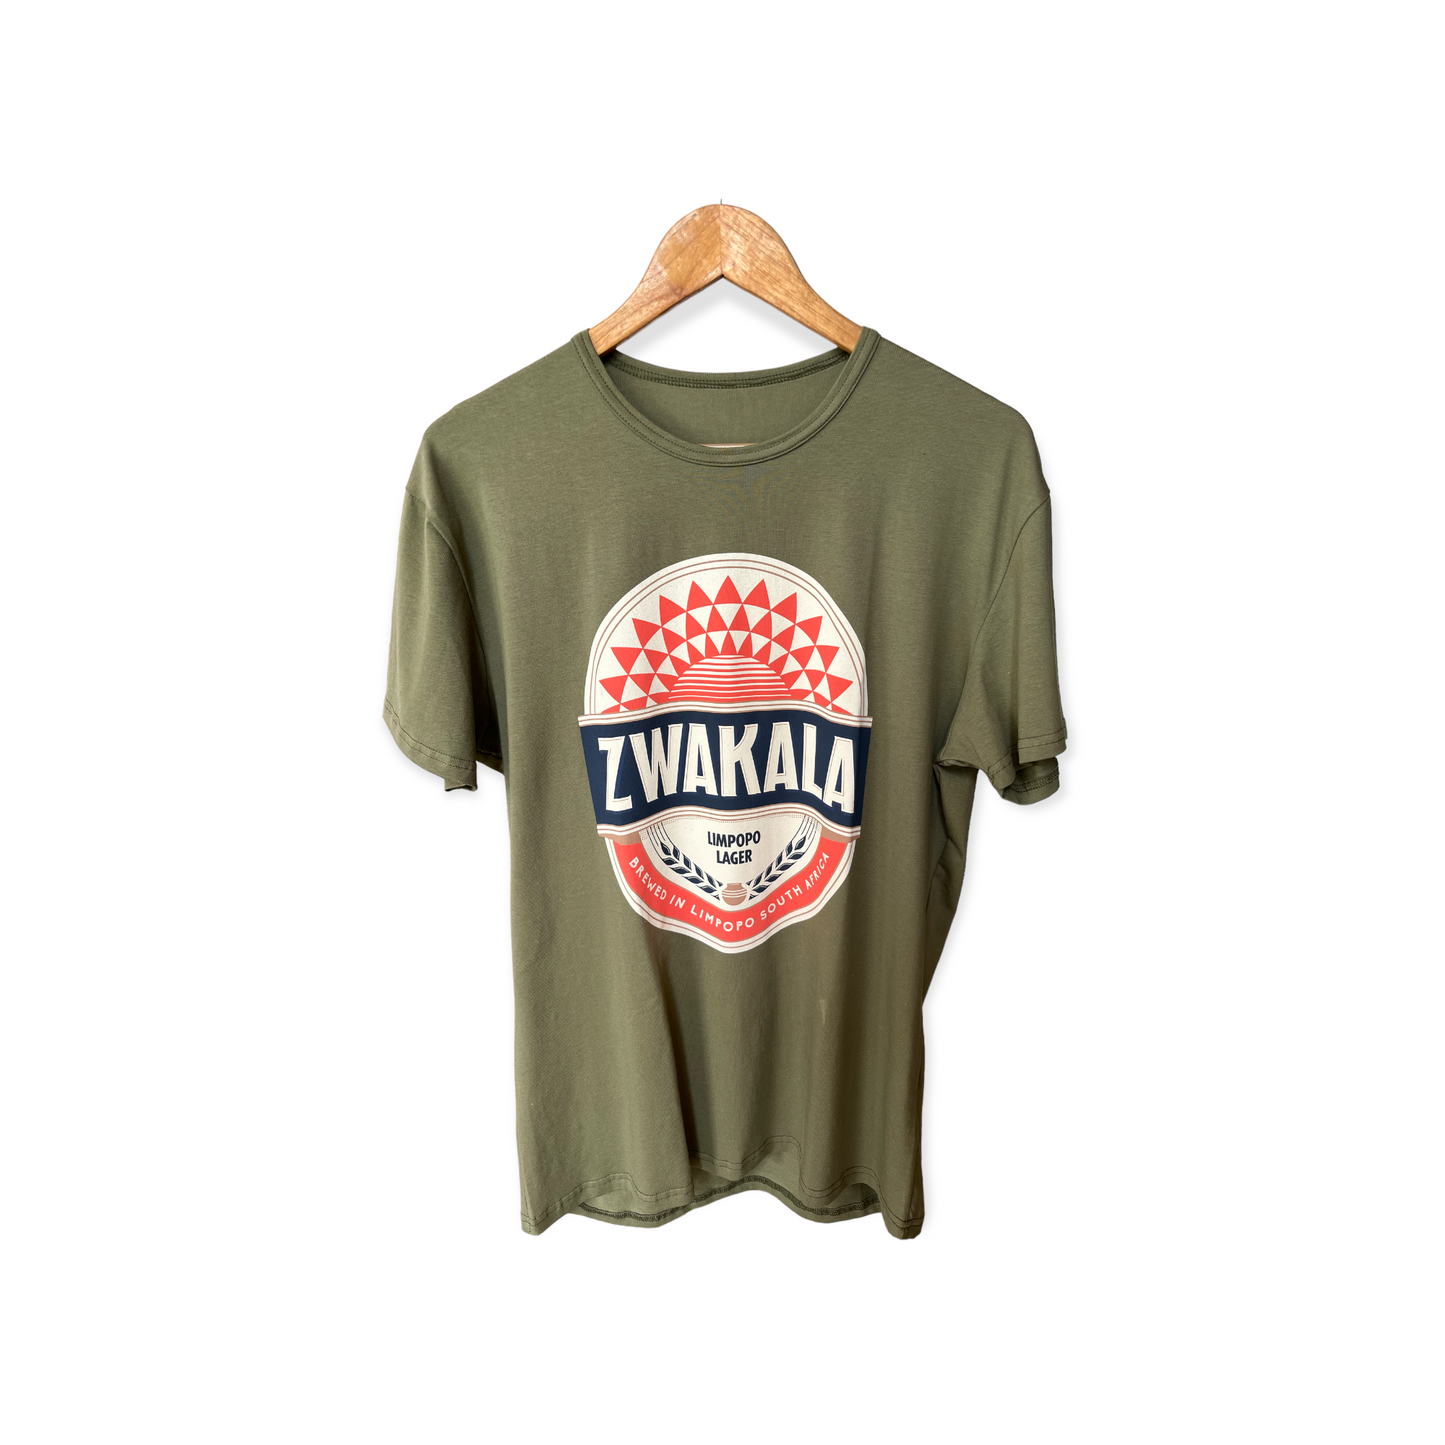 Zwakala Original T-shirt